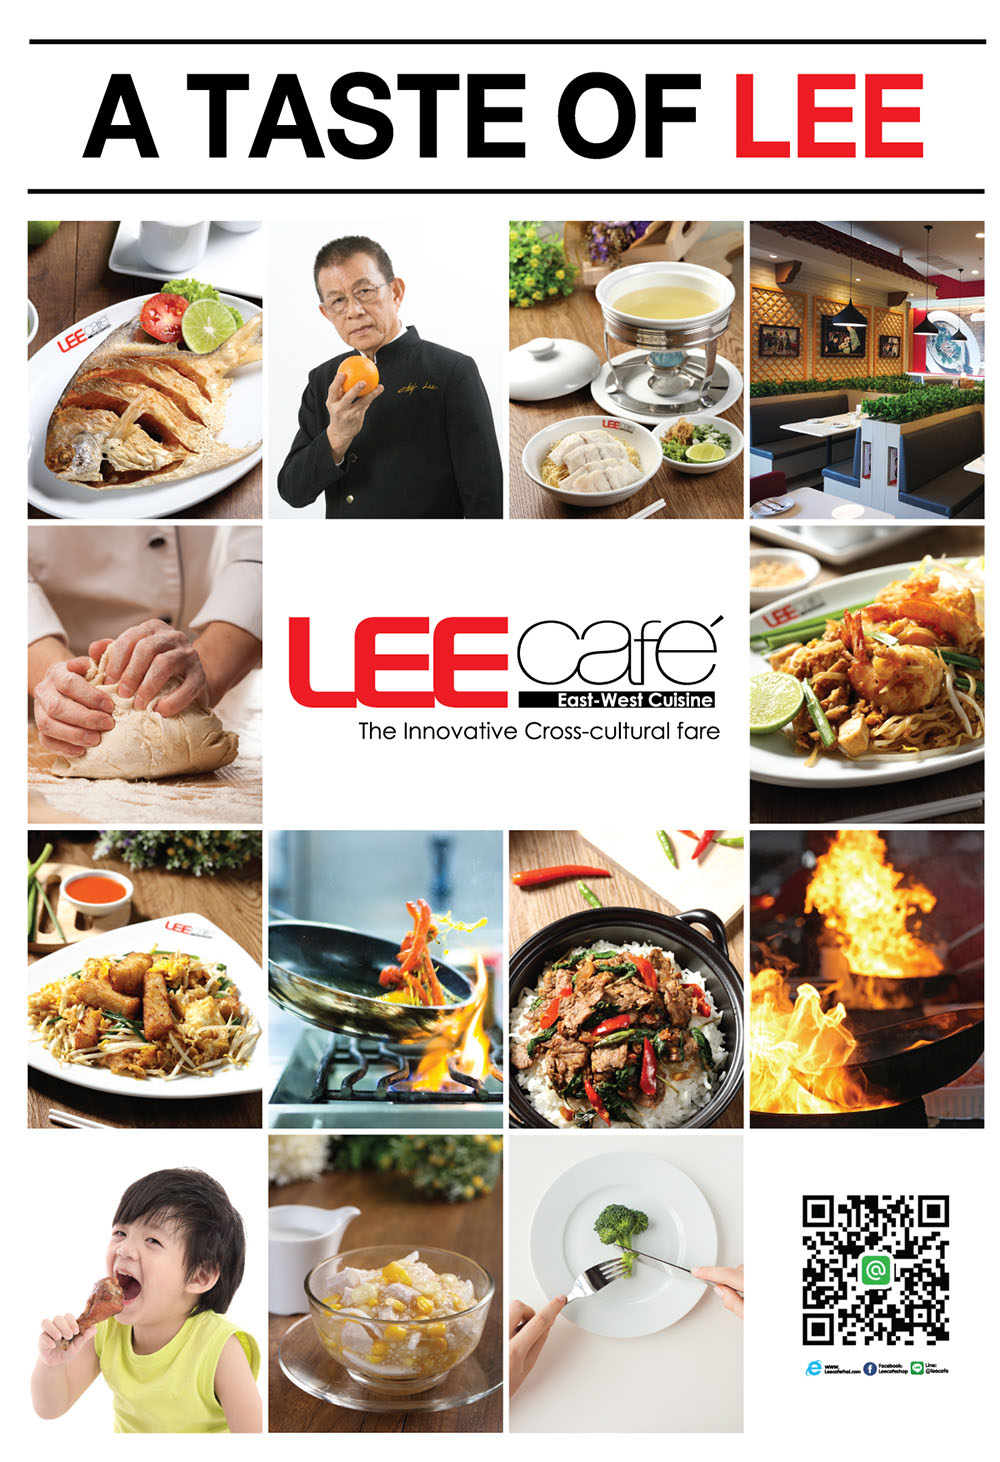 Lee Cafe